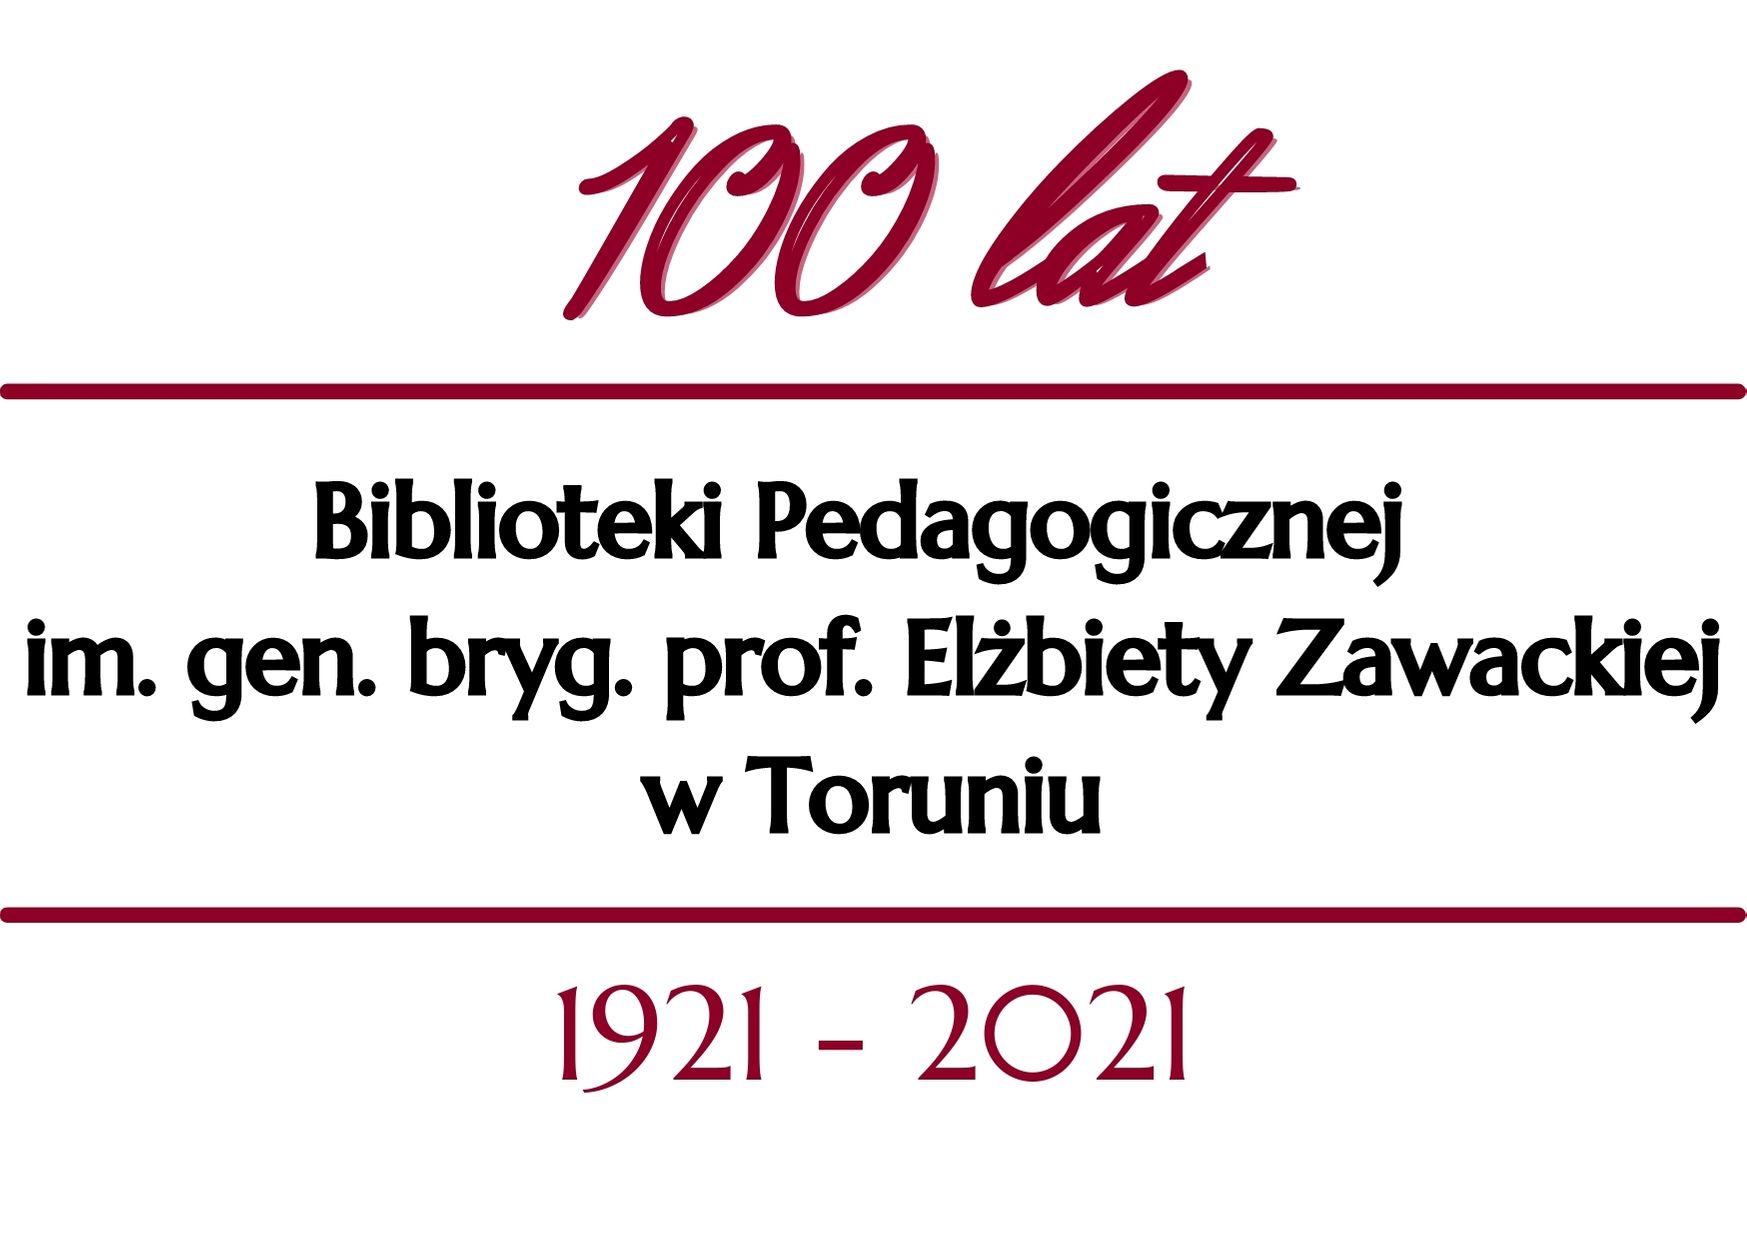 Logo jubileuszu 100 lat Biblioteki Pedagogicznej im. gen. bryg. prof. Elżbiety Zawackiej w Toruniu 1921-2021